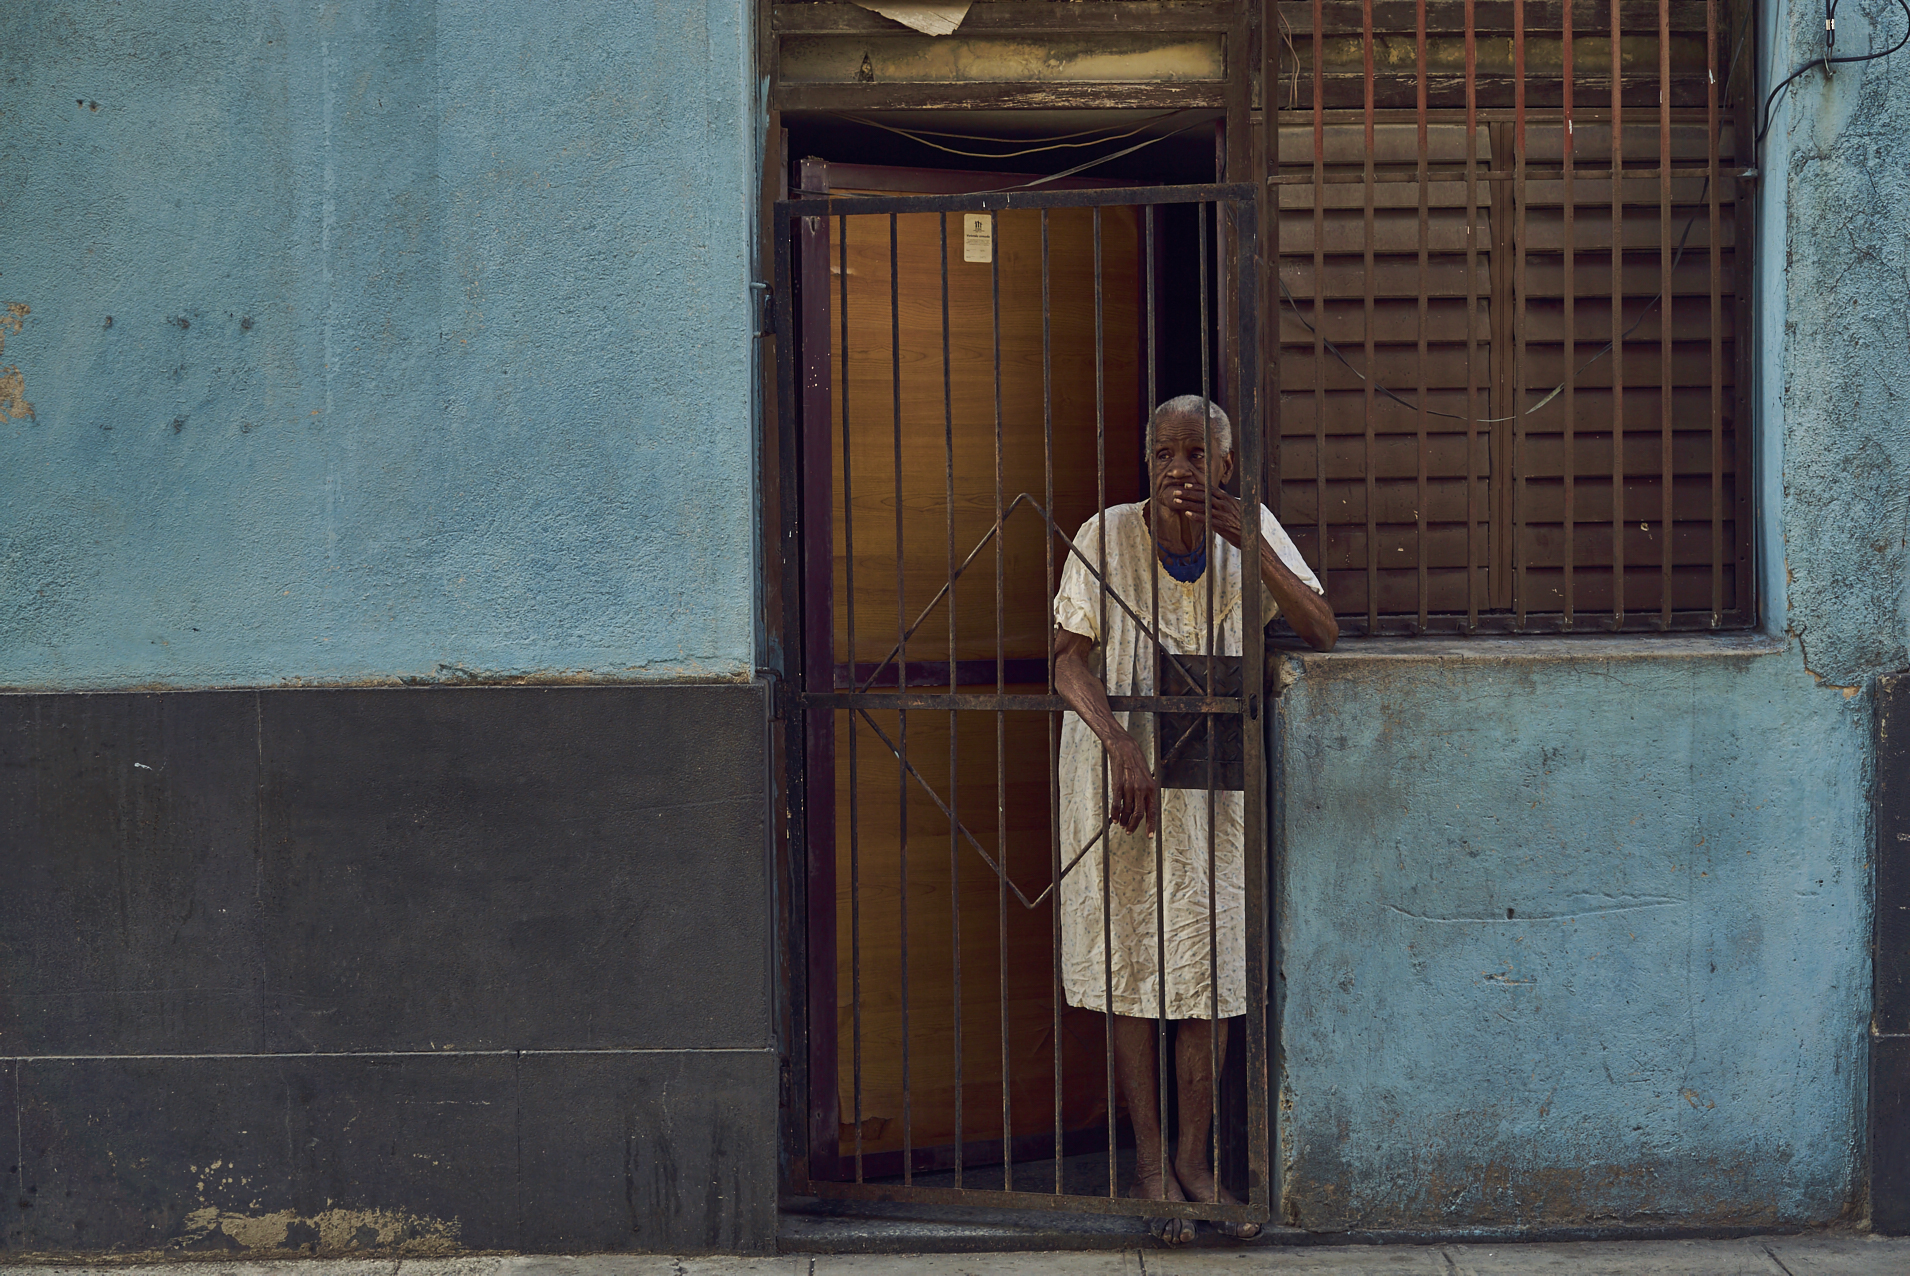 Kuba_201701-2640.jpg